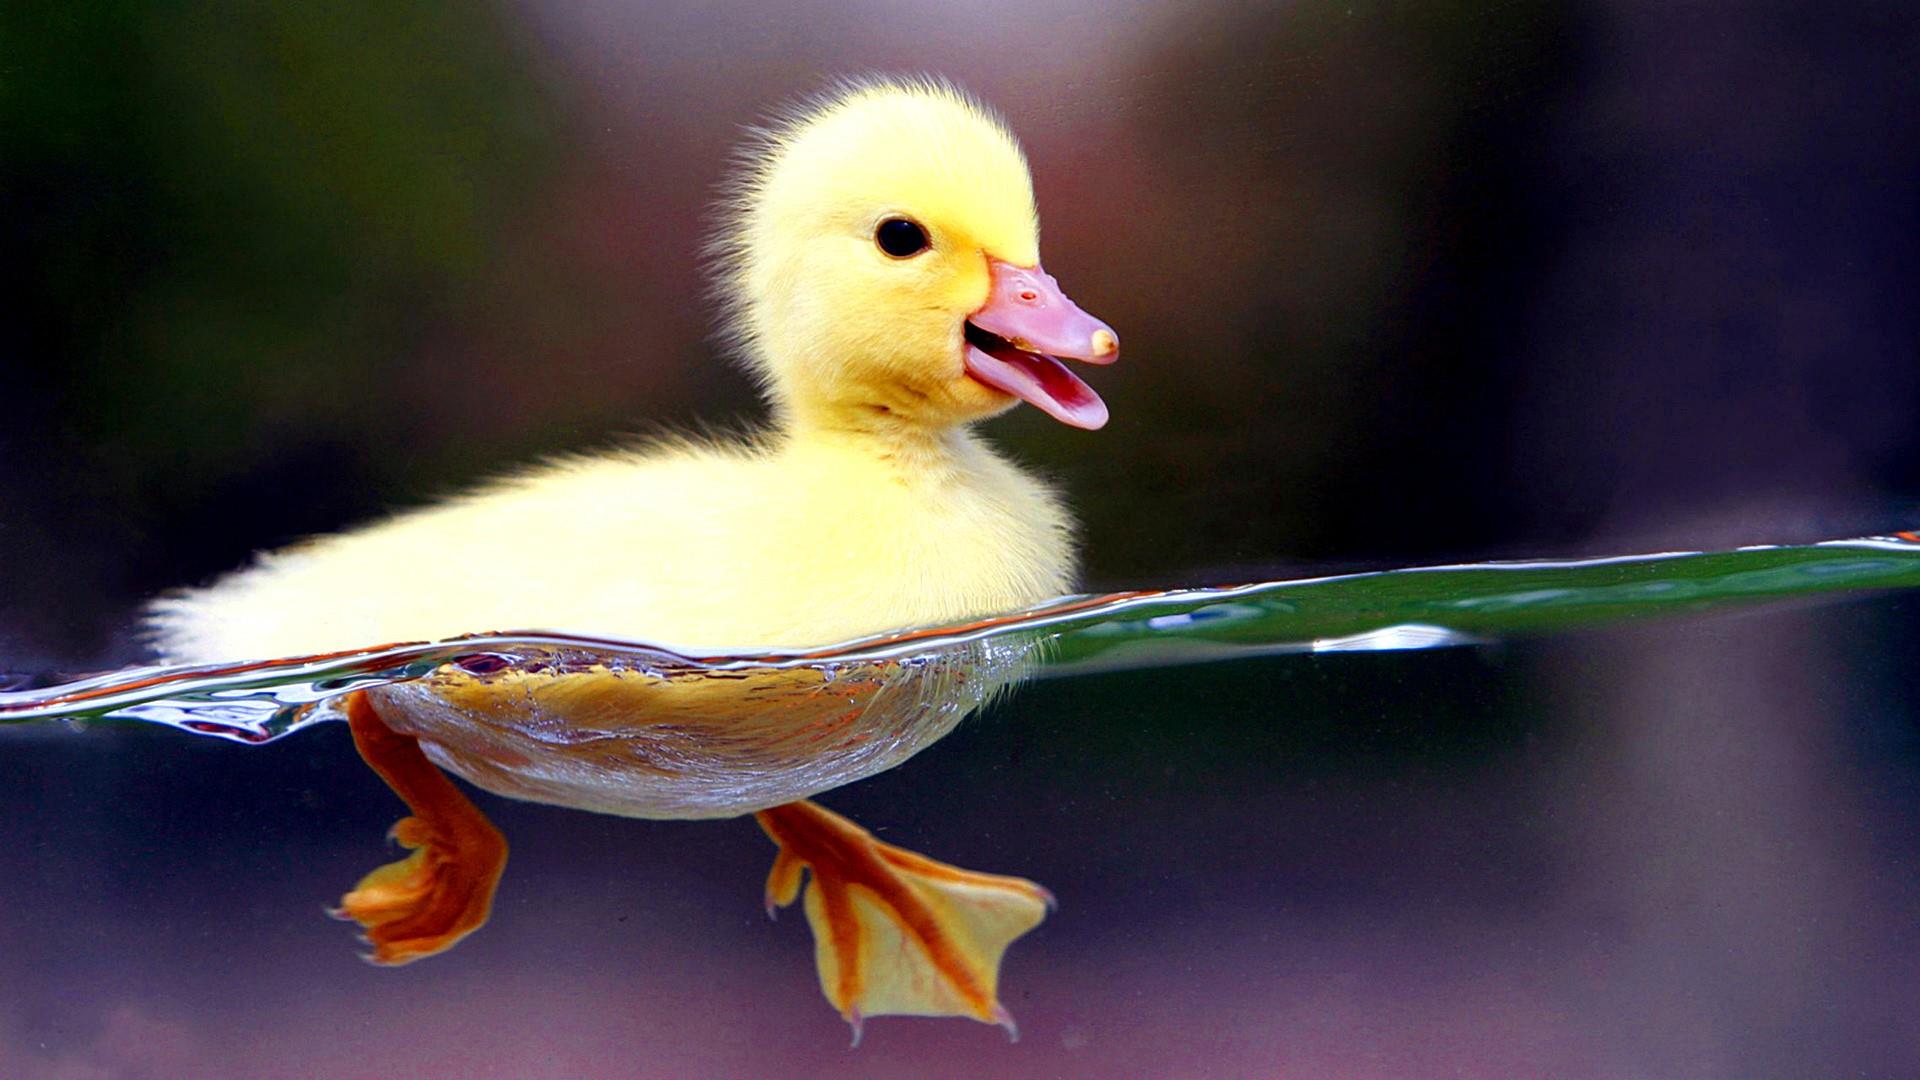 Cute duckling photo